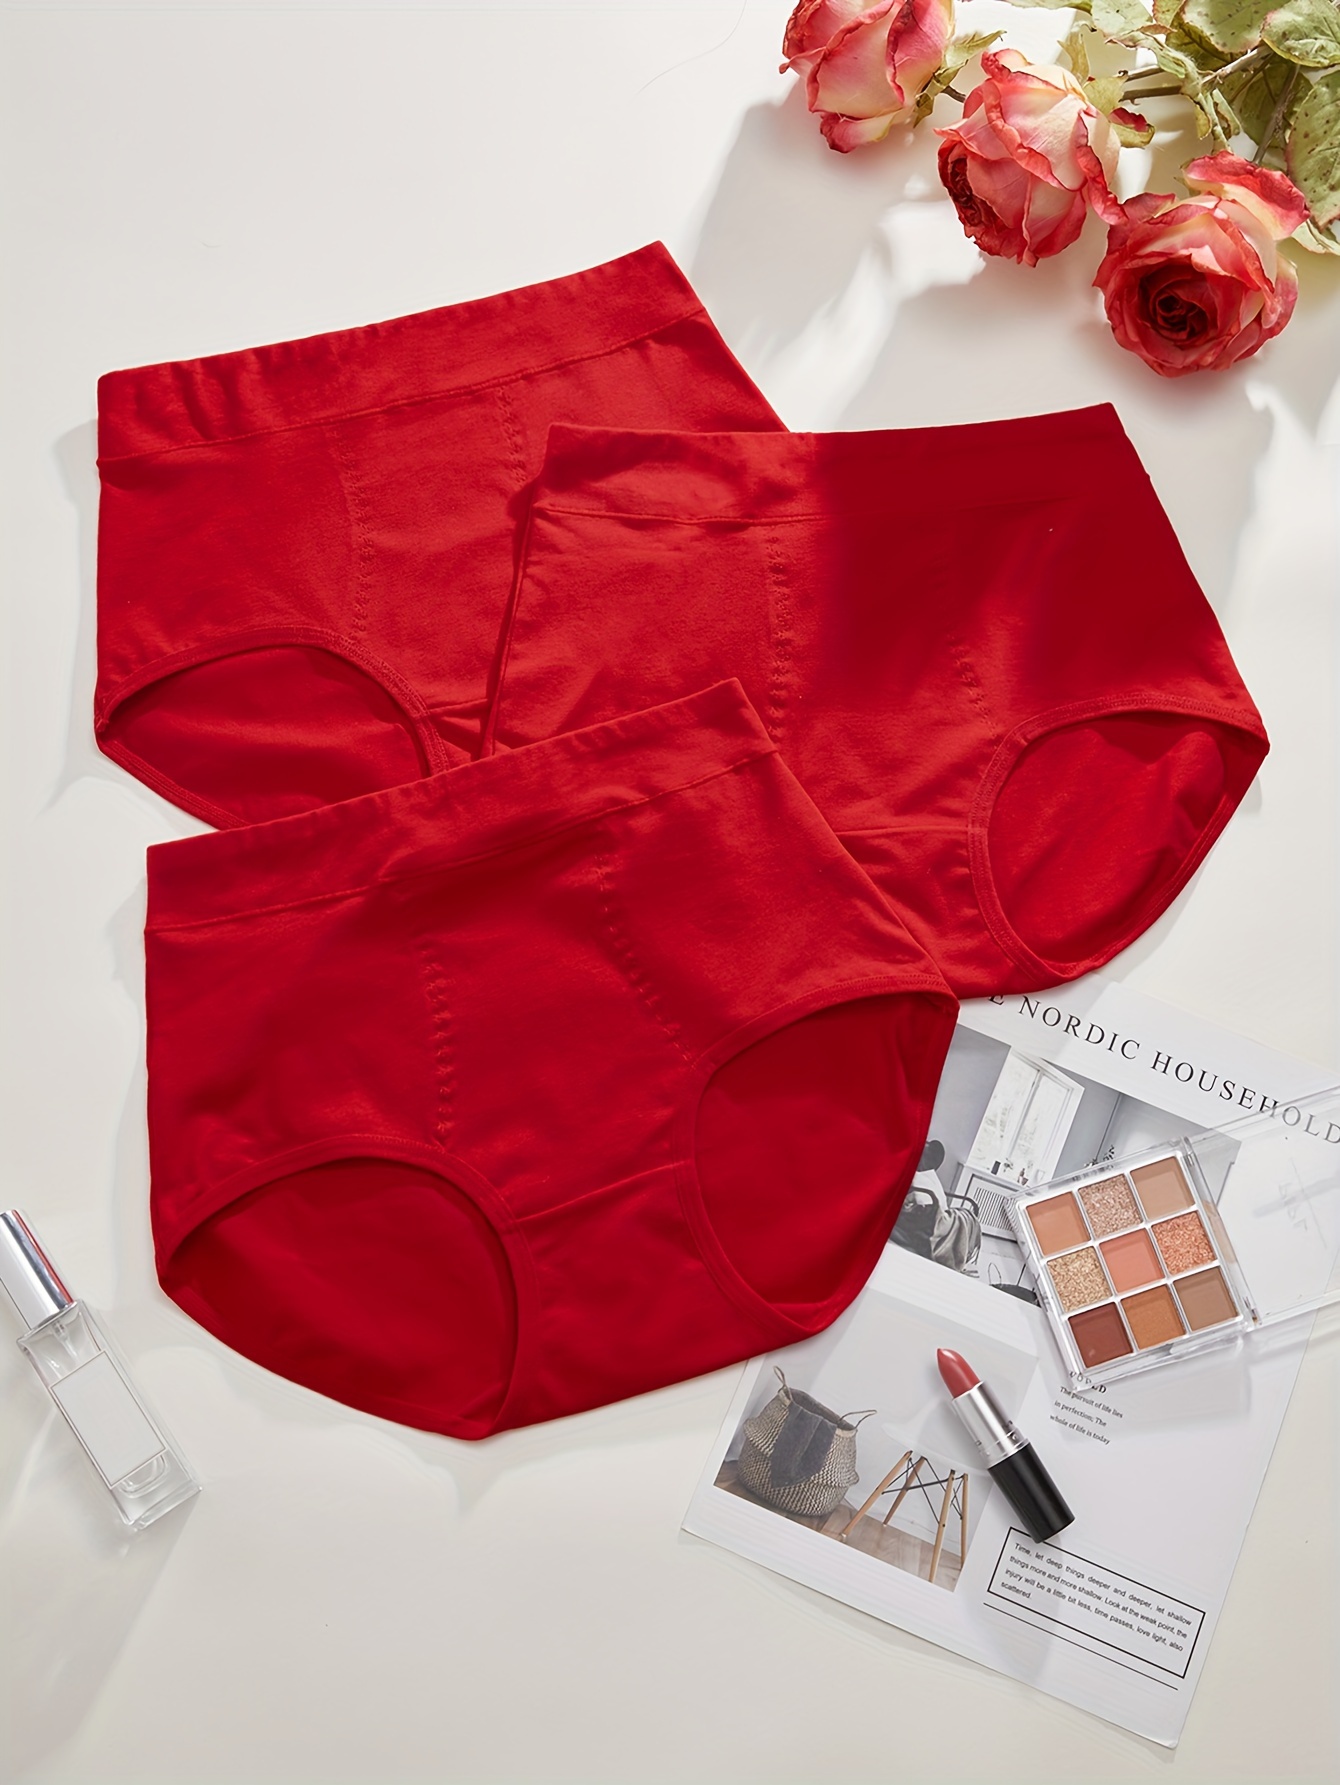 Women Red Cotton Underwear, Cute Underwear Women Cotton